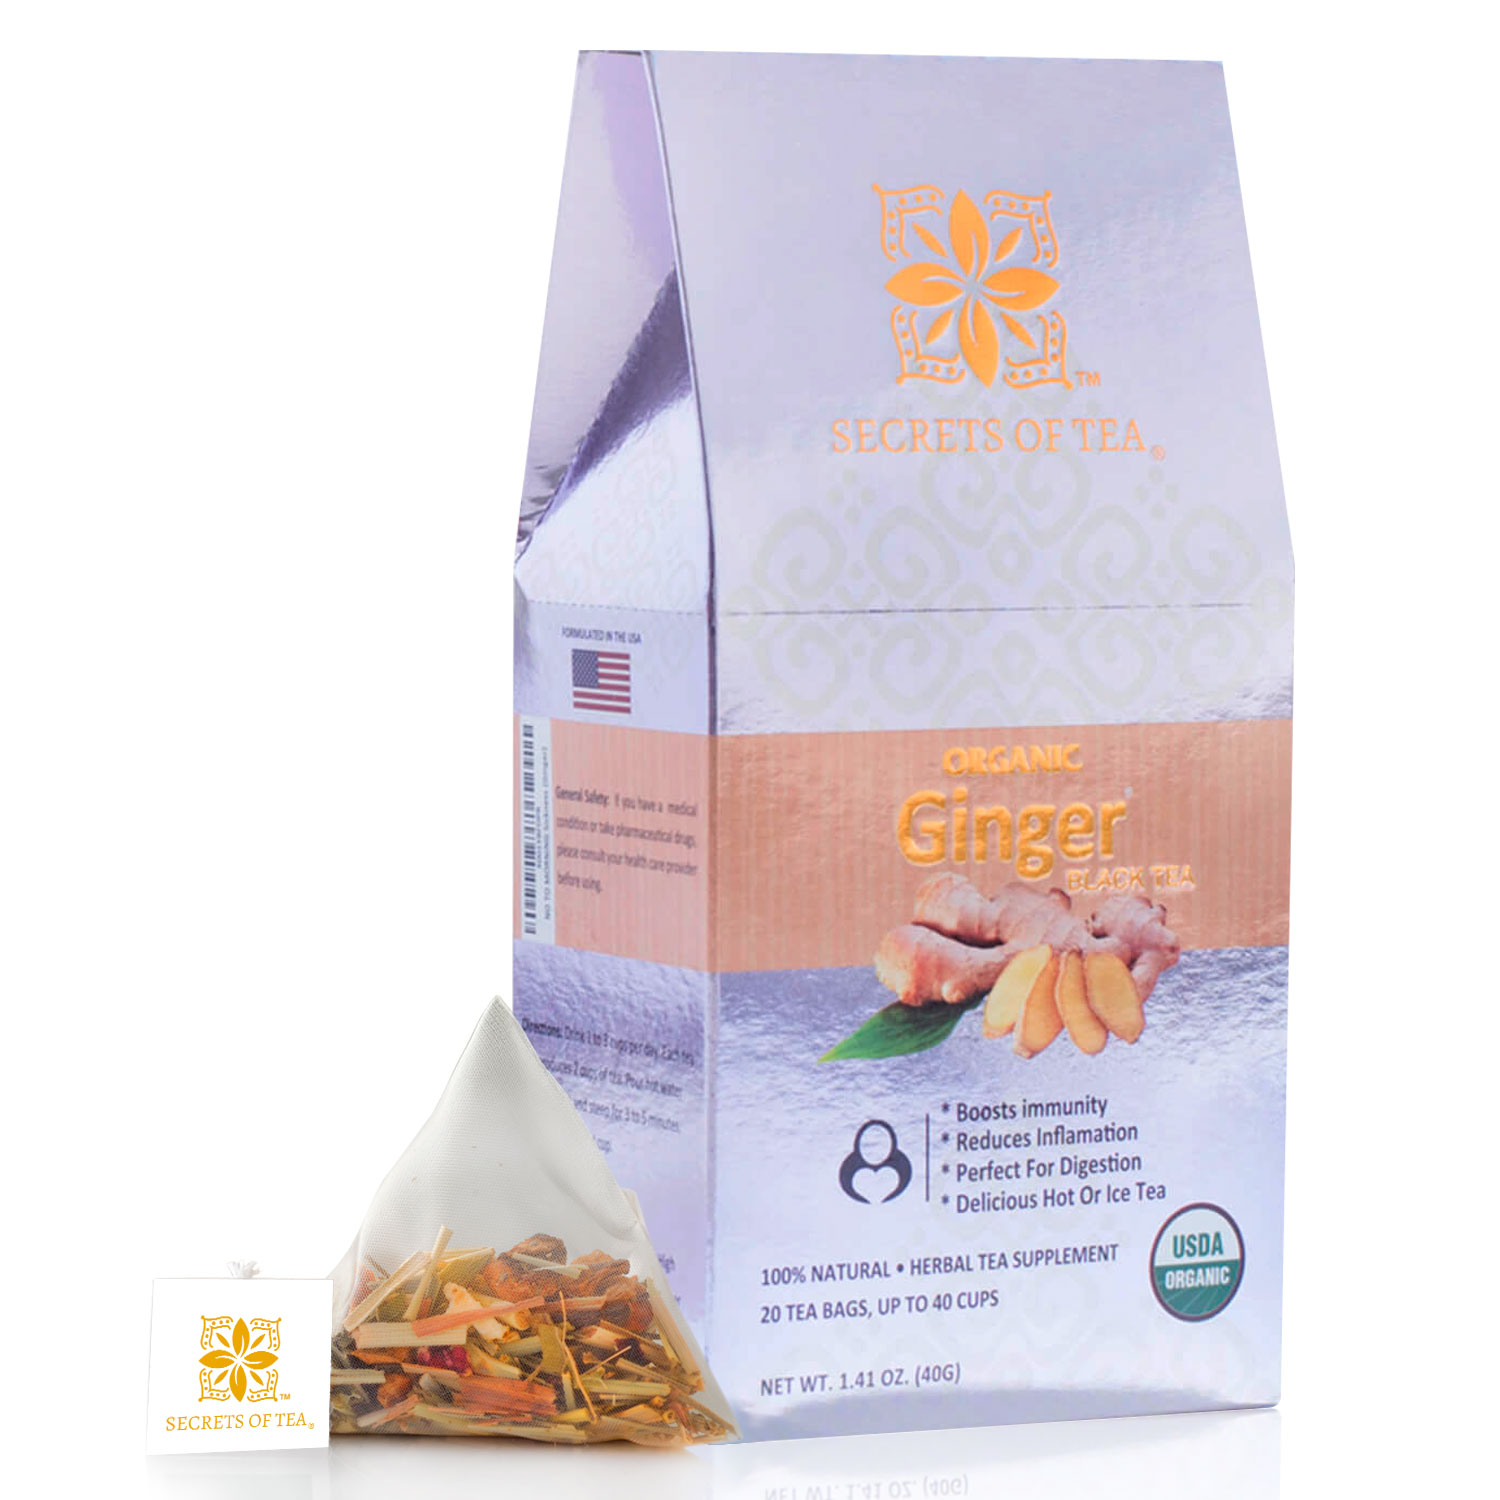 Secrets of Tea Organic Ginger Black Tea 2 innerpacks per case 2.0 oz